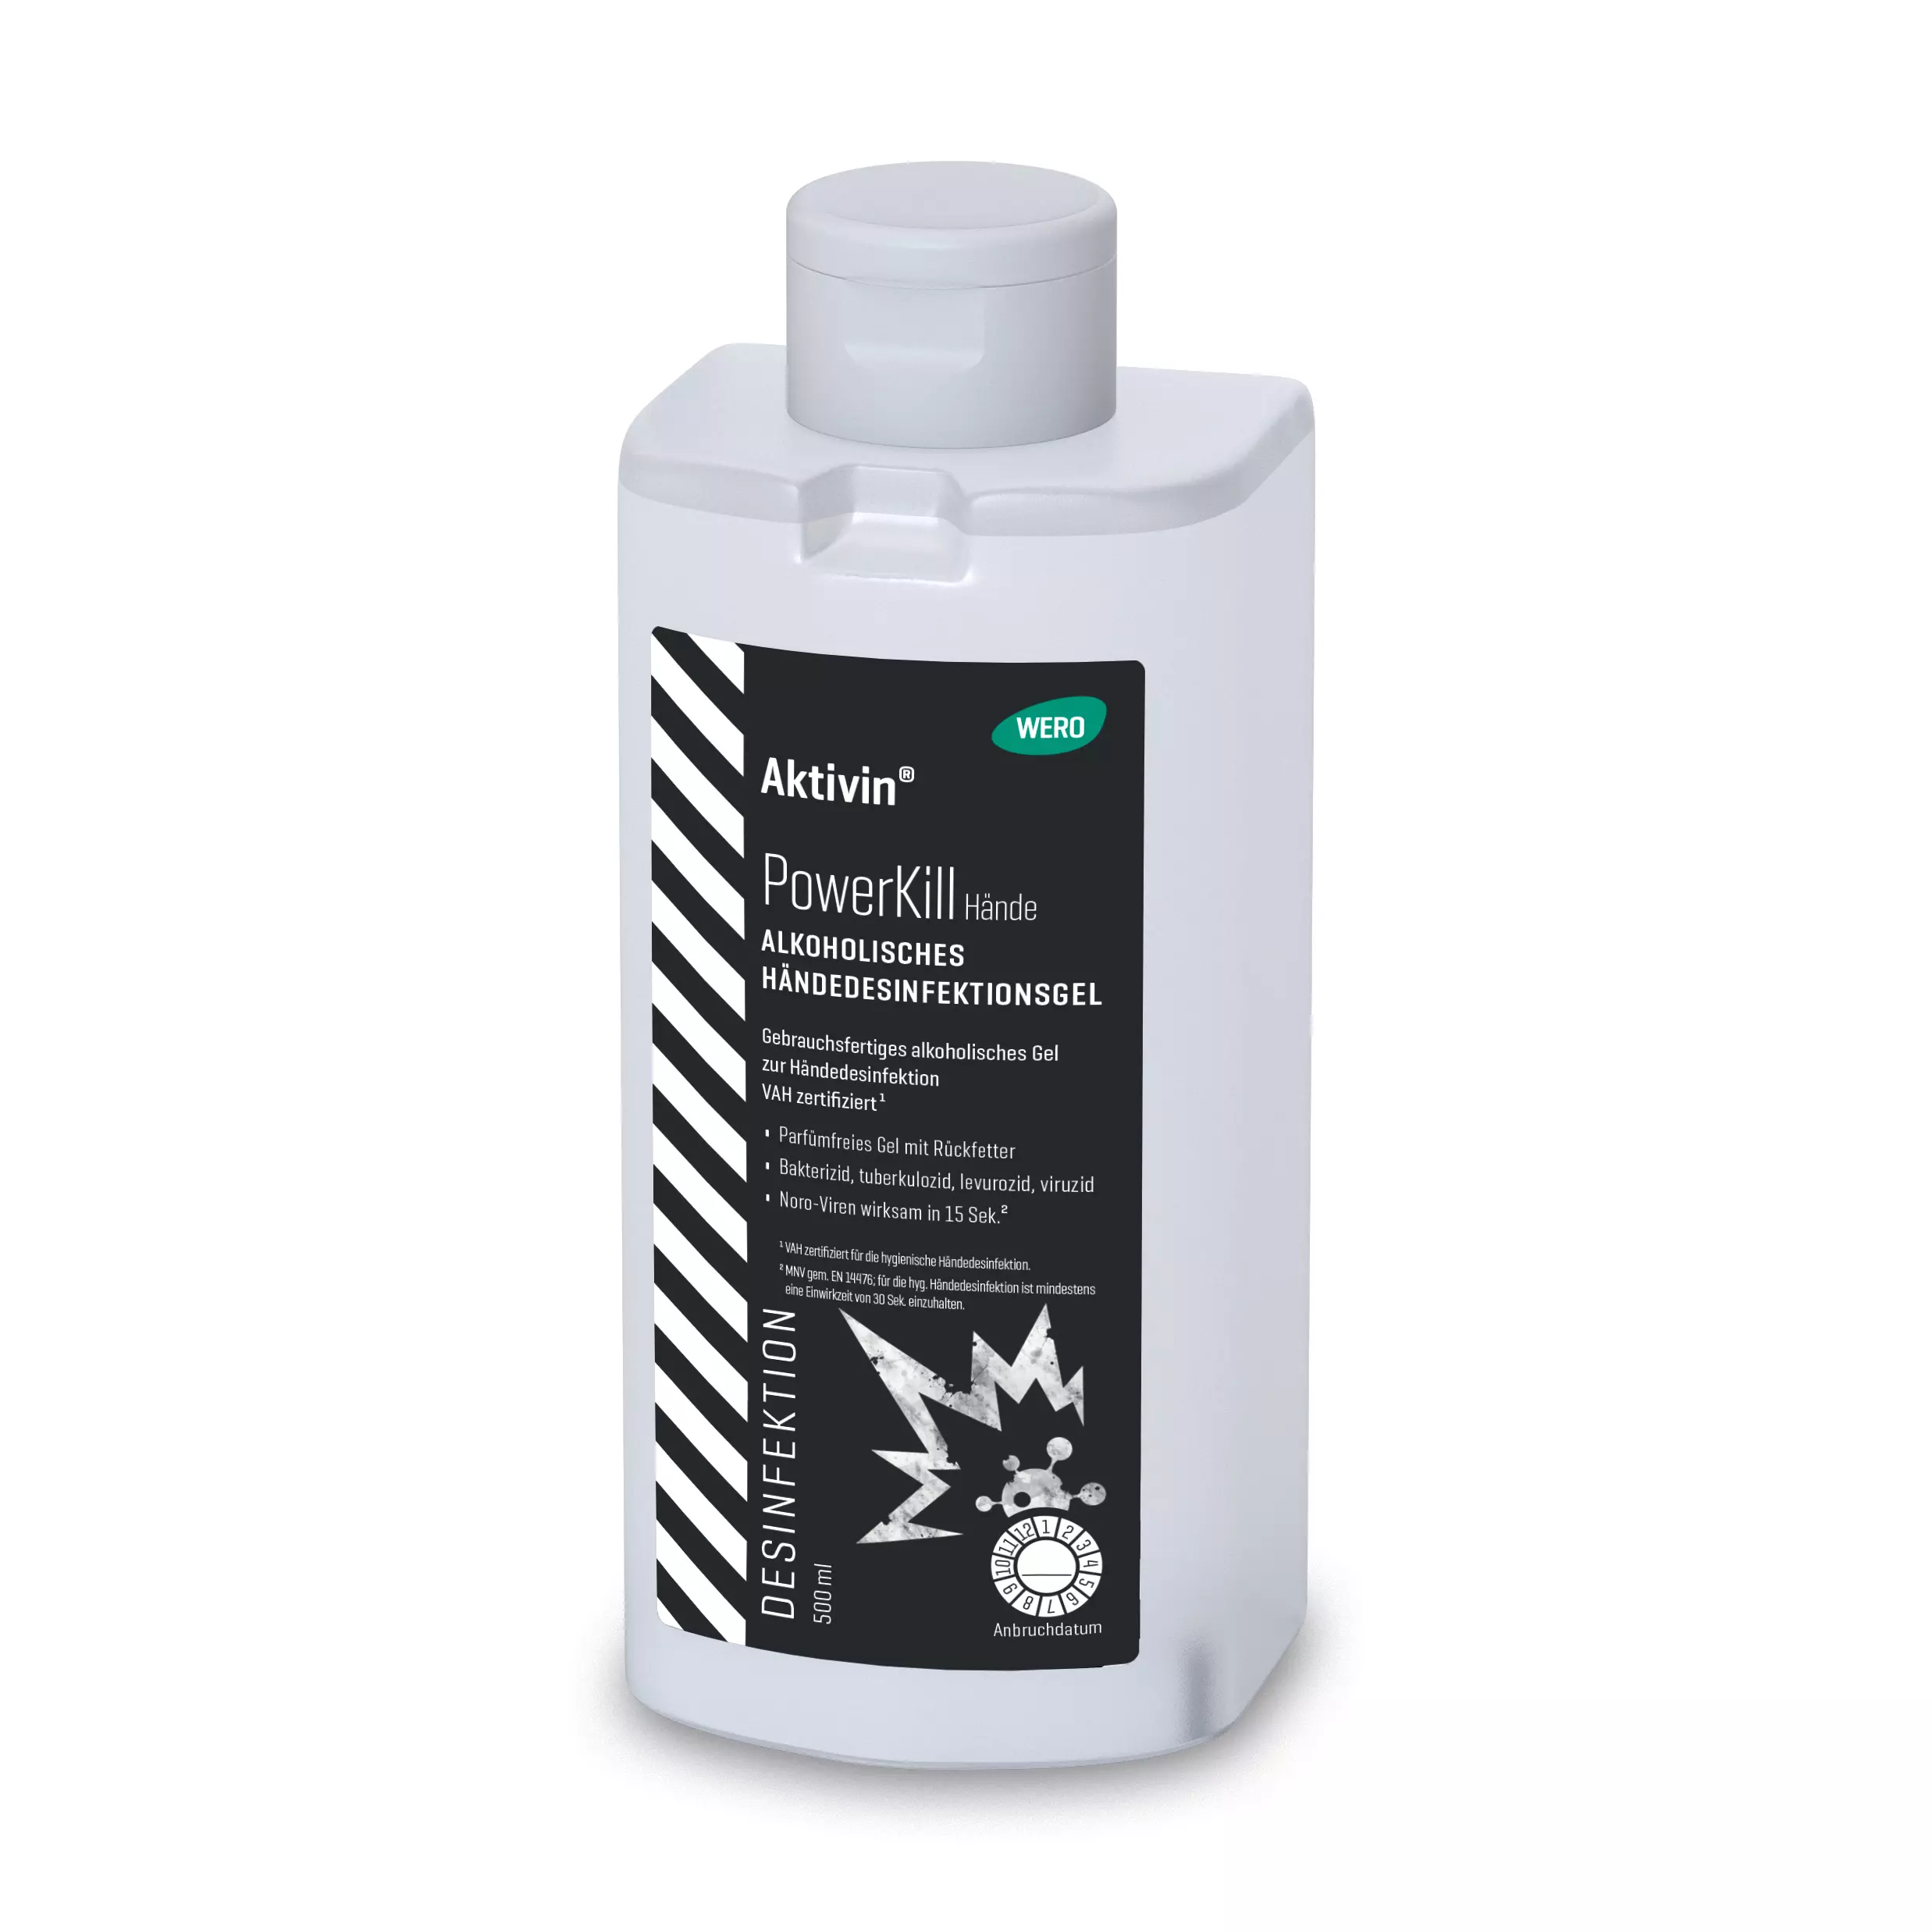 Händedesinfektionsgel Aktivin® PowerKill - Euroflasche, 500 ml